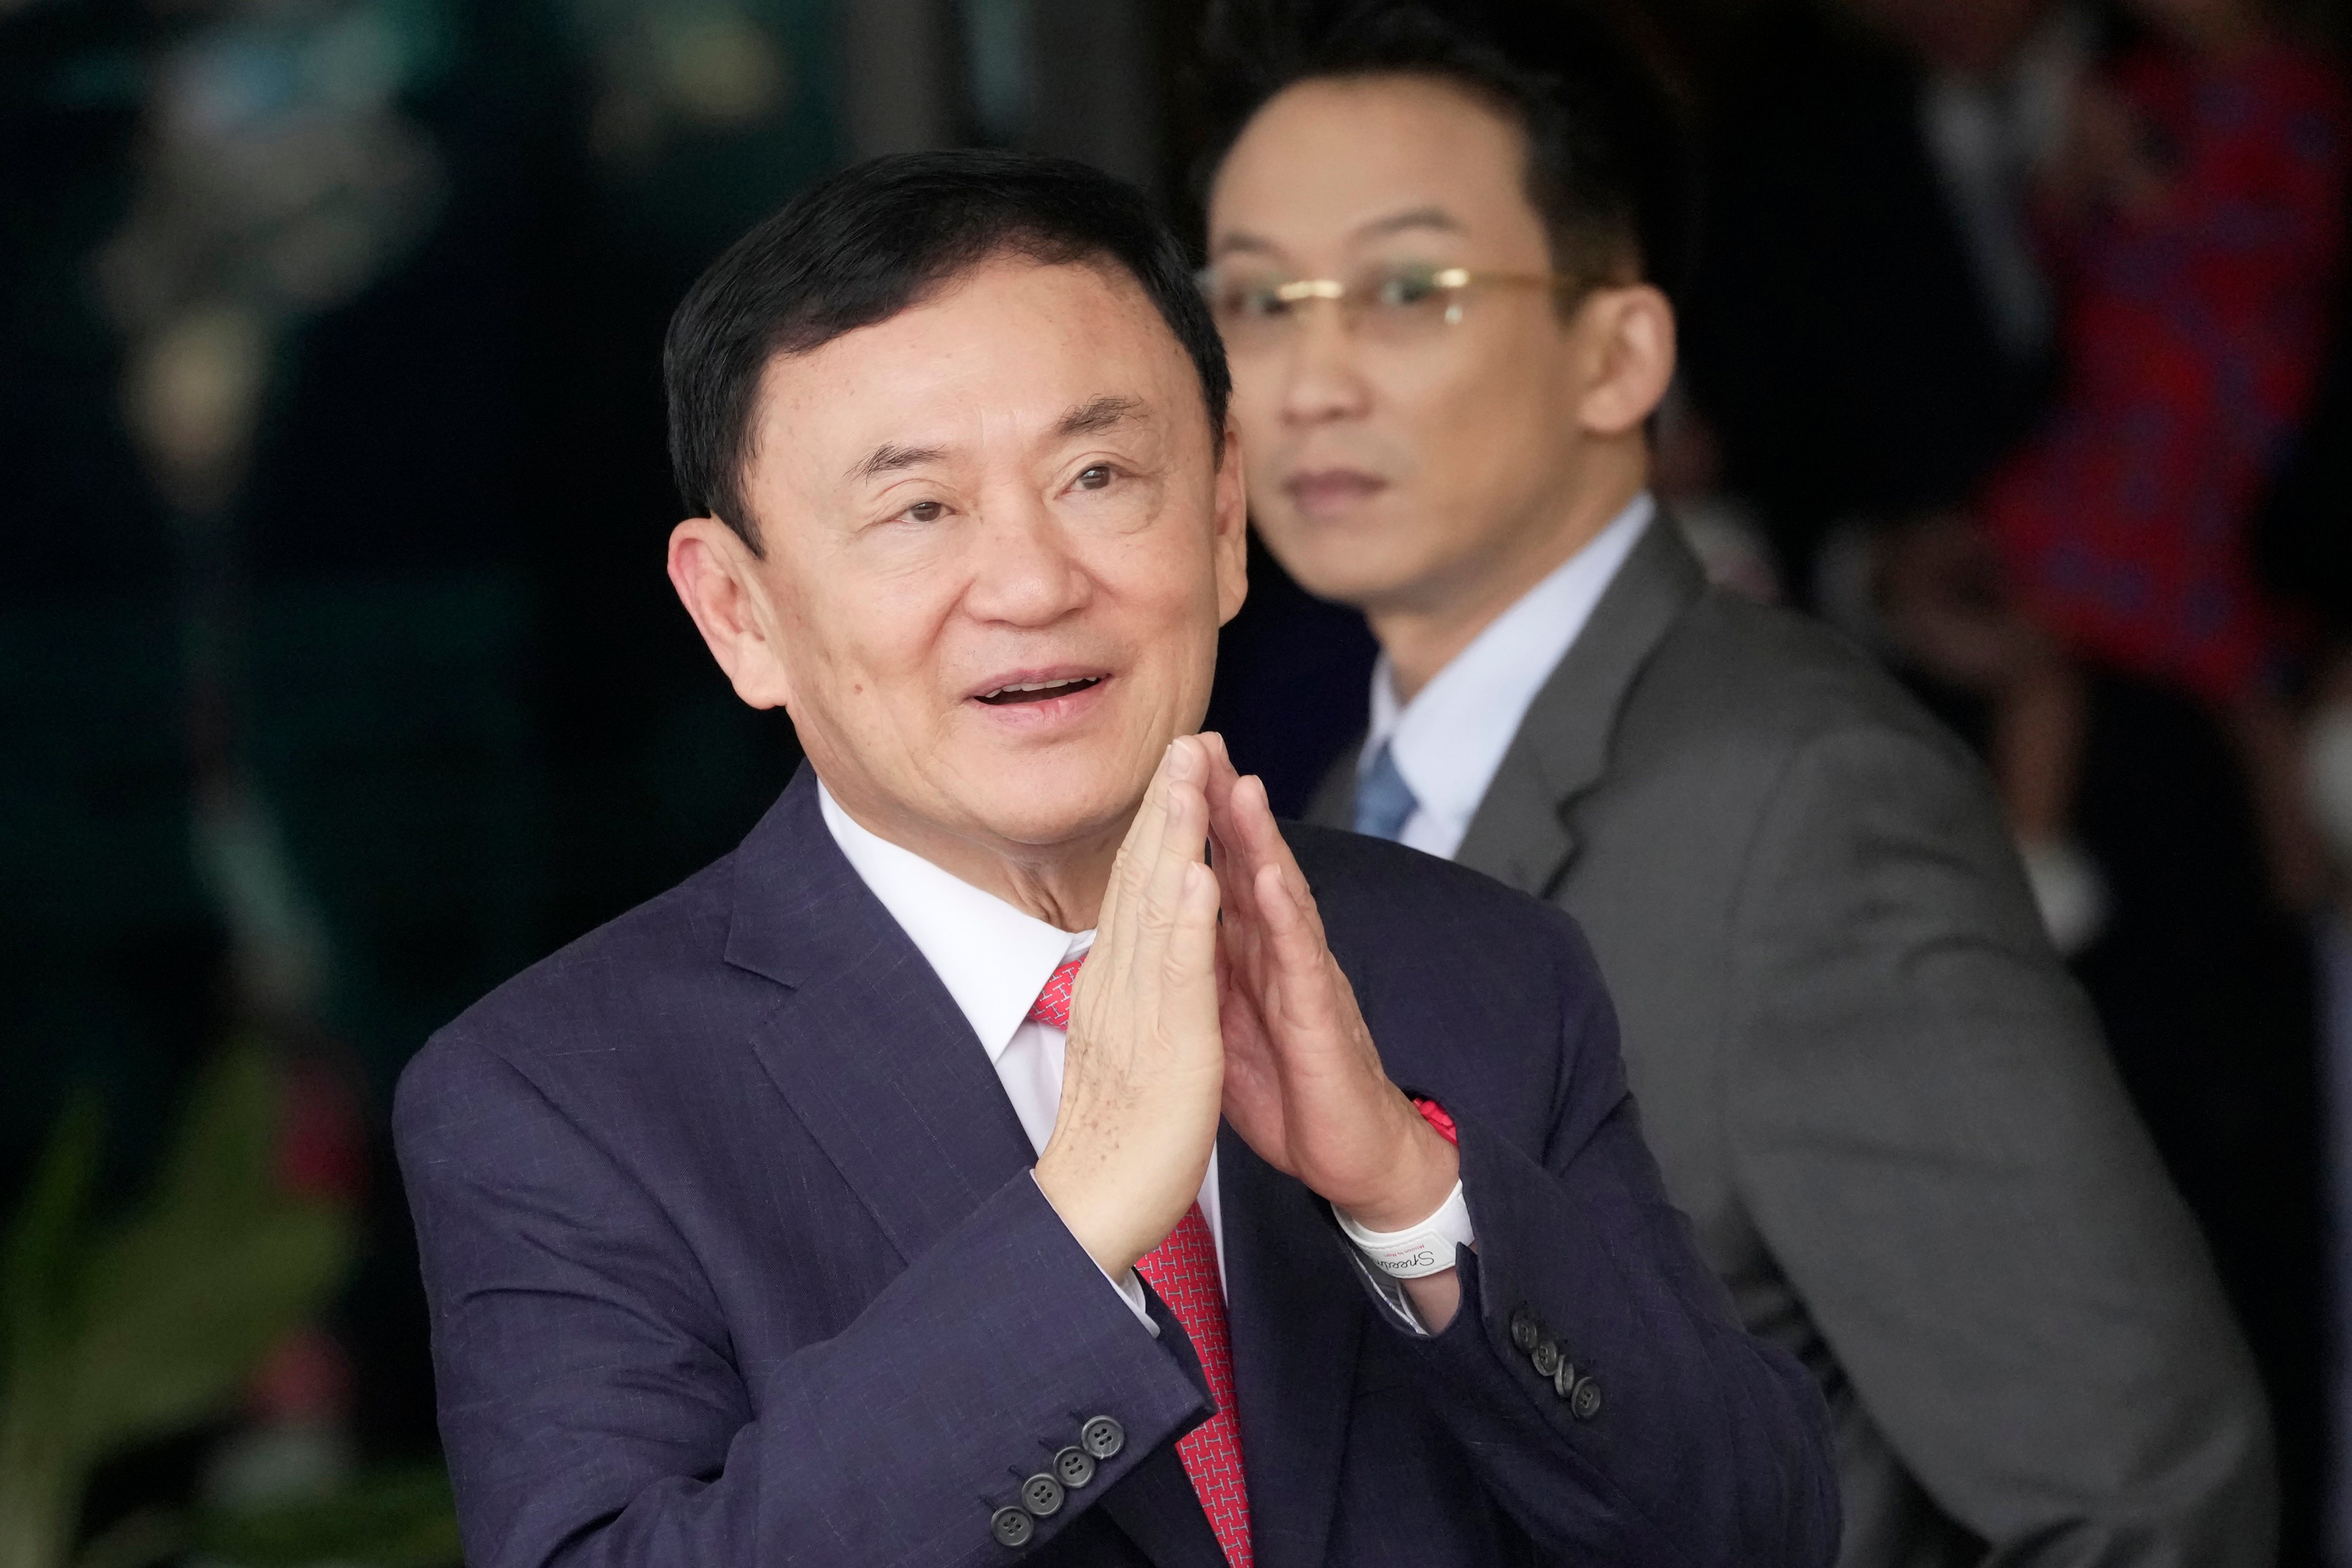 Thailand’s former Prime Minister Thaksin Shinawatra at Don Muang airport in Bangkok, Thailand. Photo: AP